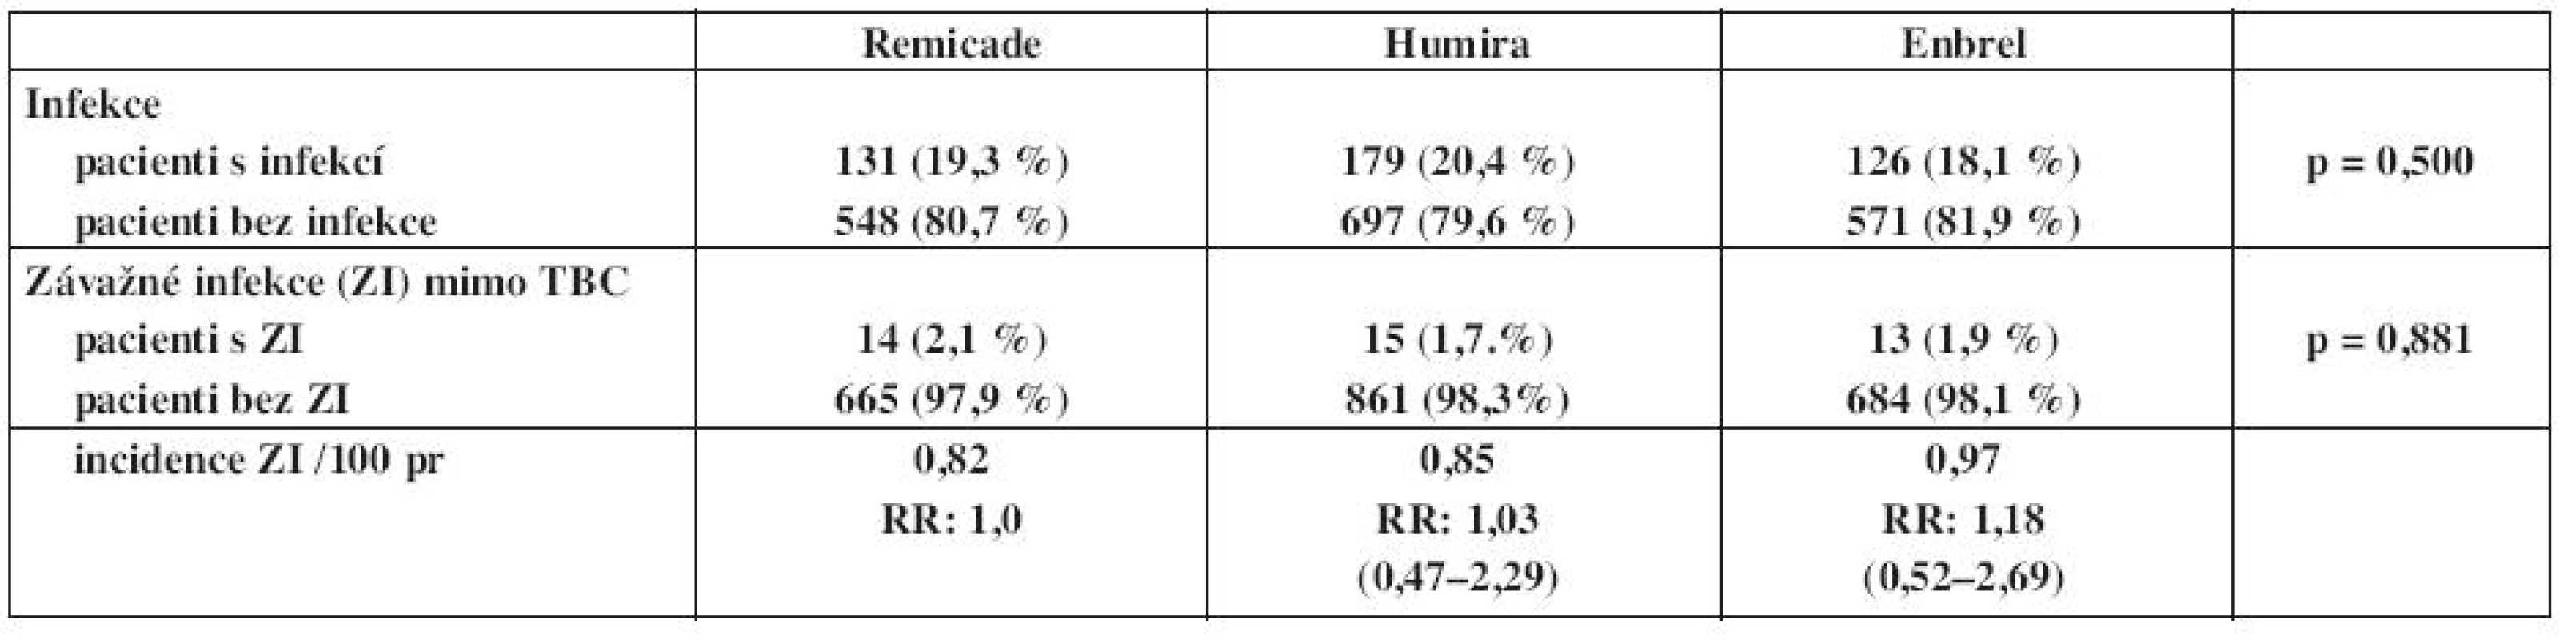 Výskyt a incidence infekcí v registru ATTRA u pacientů s revmatoidní atrtitidou – porovnání mezi jednotlivými preparáty.